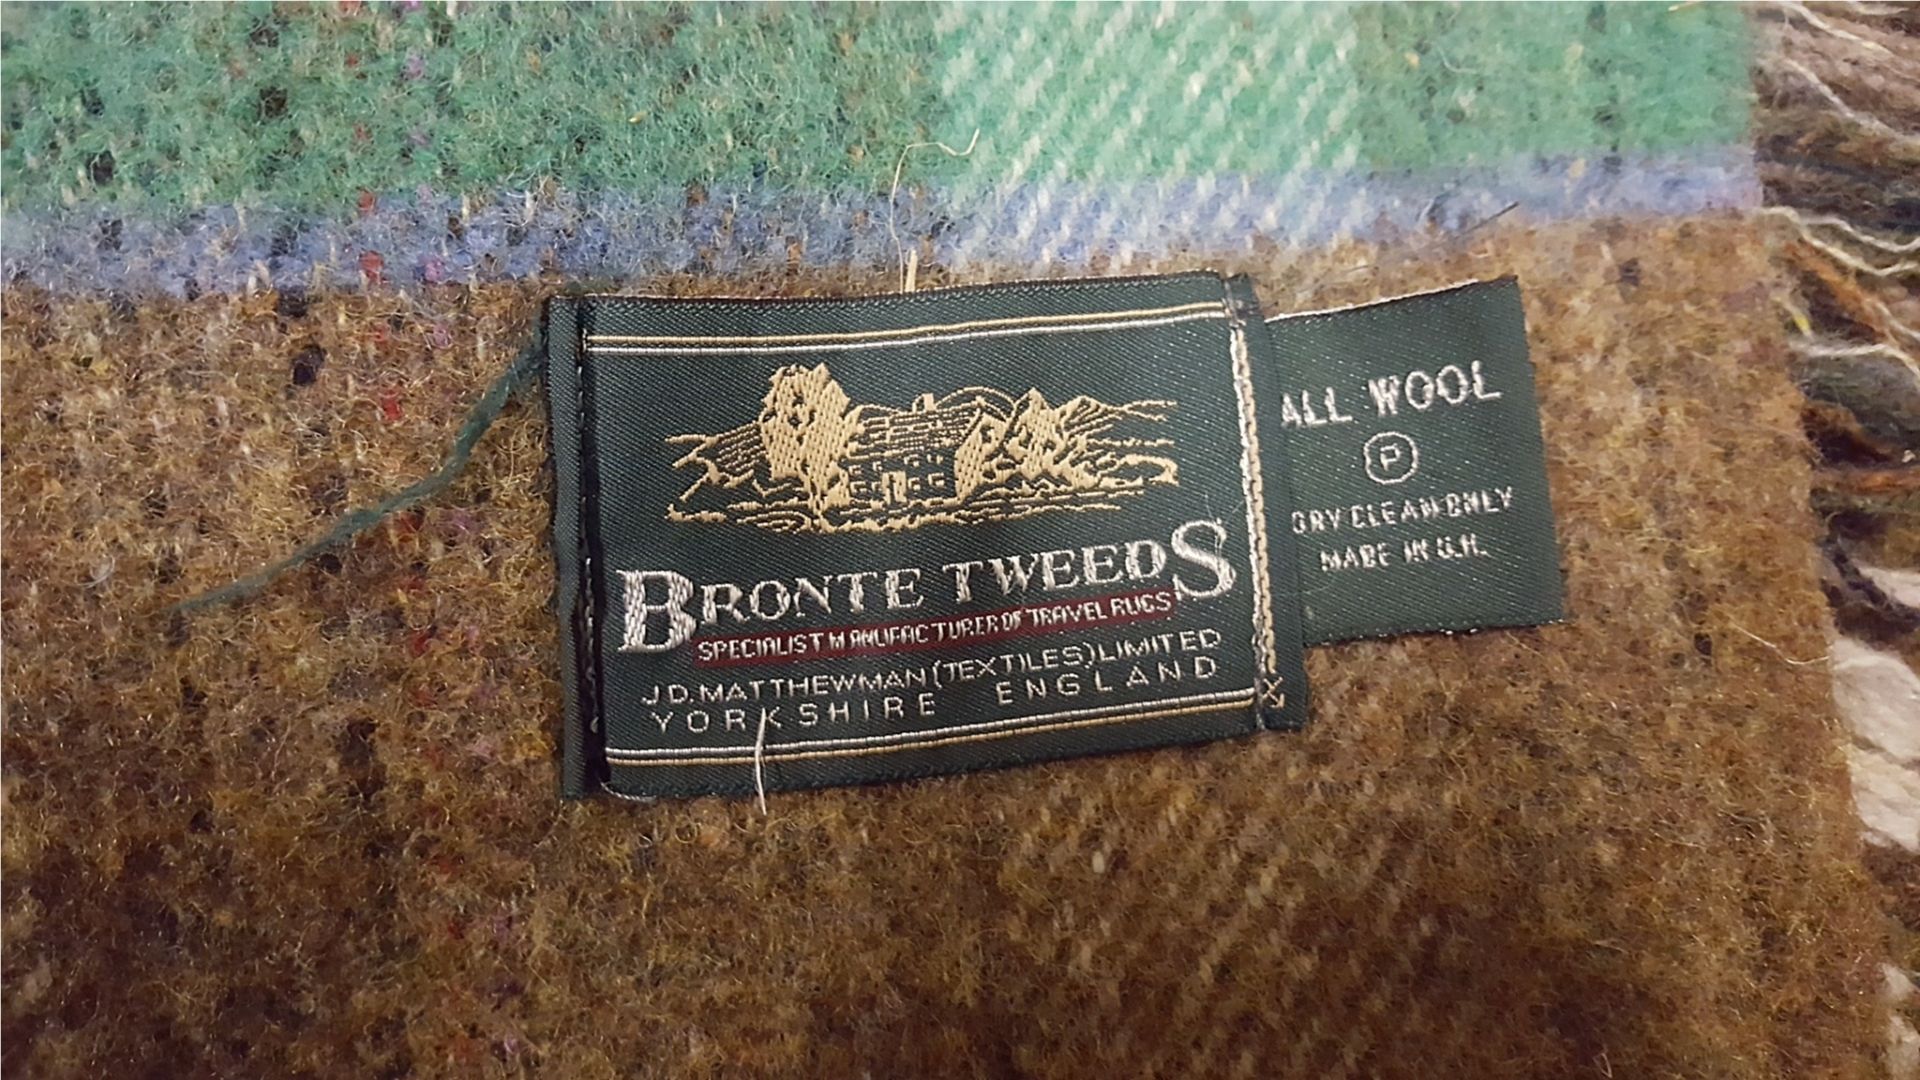 Bronte Tweed Travel Rug Plus 3 other travel rugs - Image 2 of 5